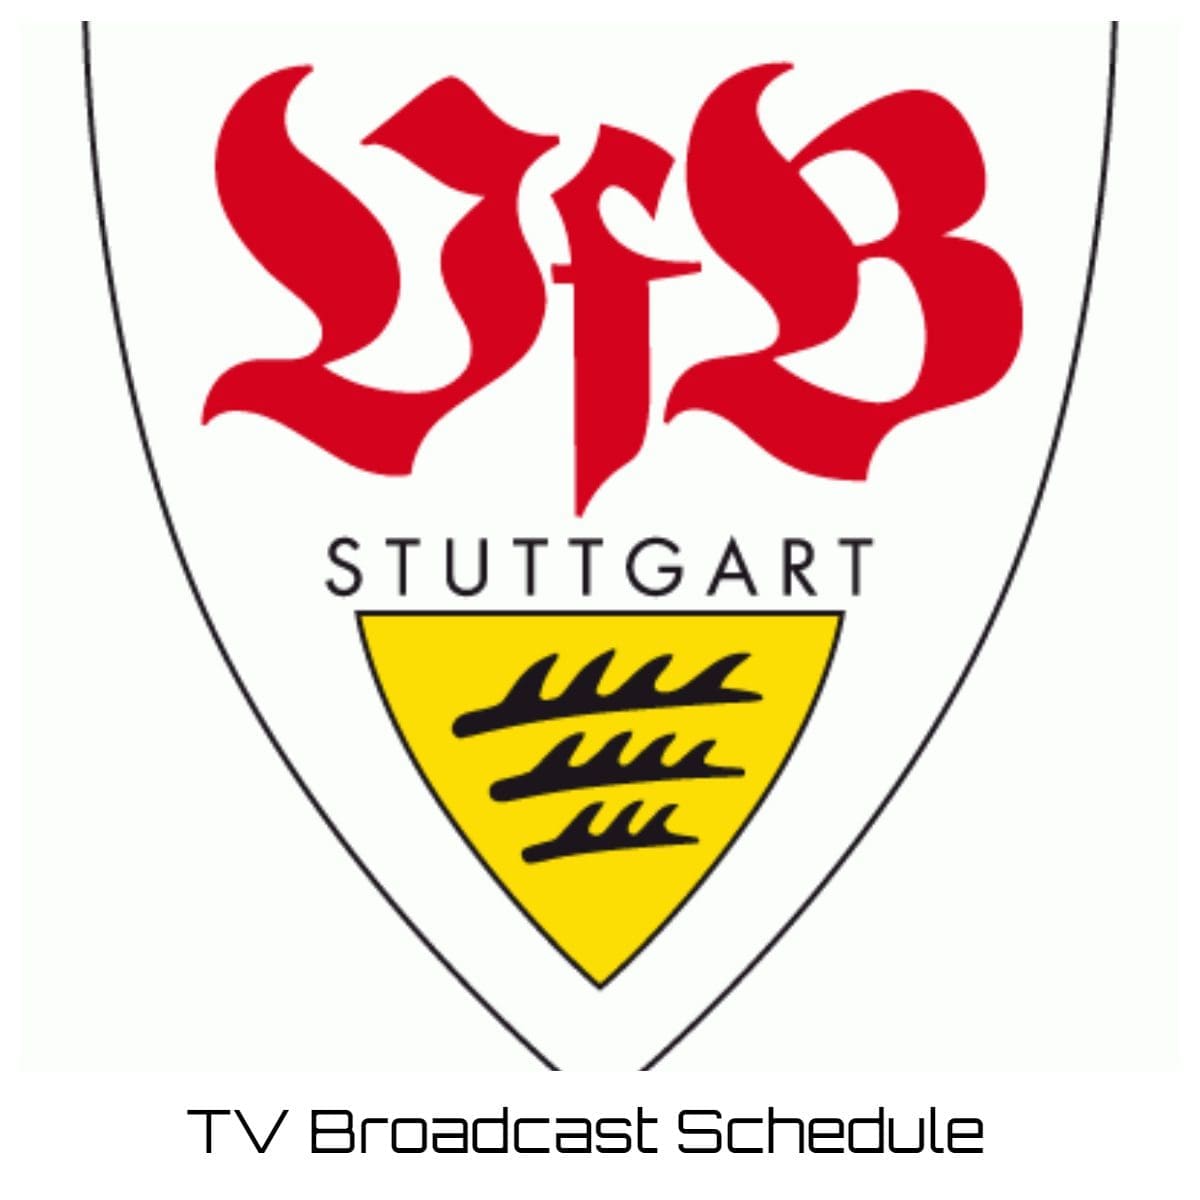 VfB Stuttgart TV Broadcast Schedule